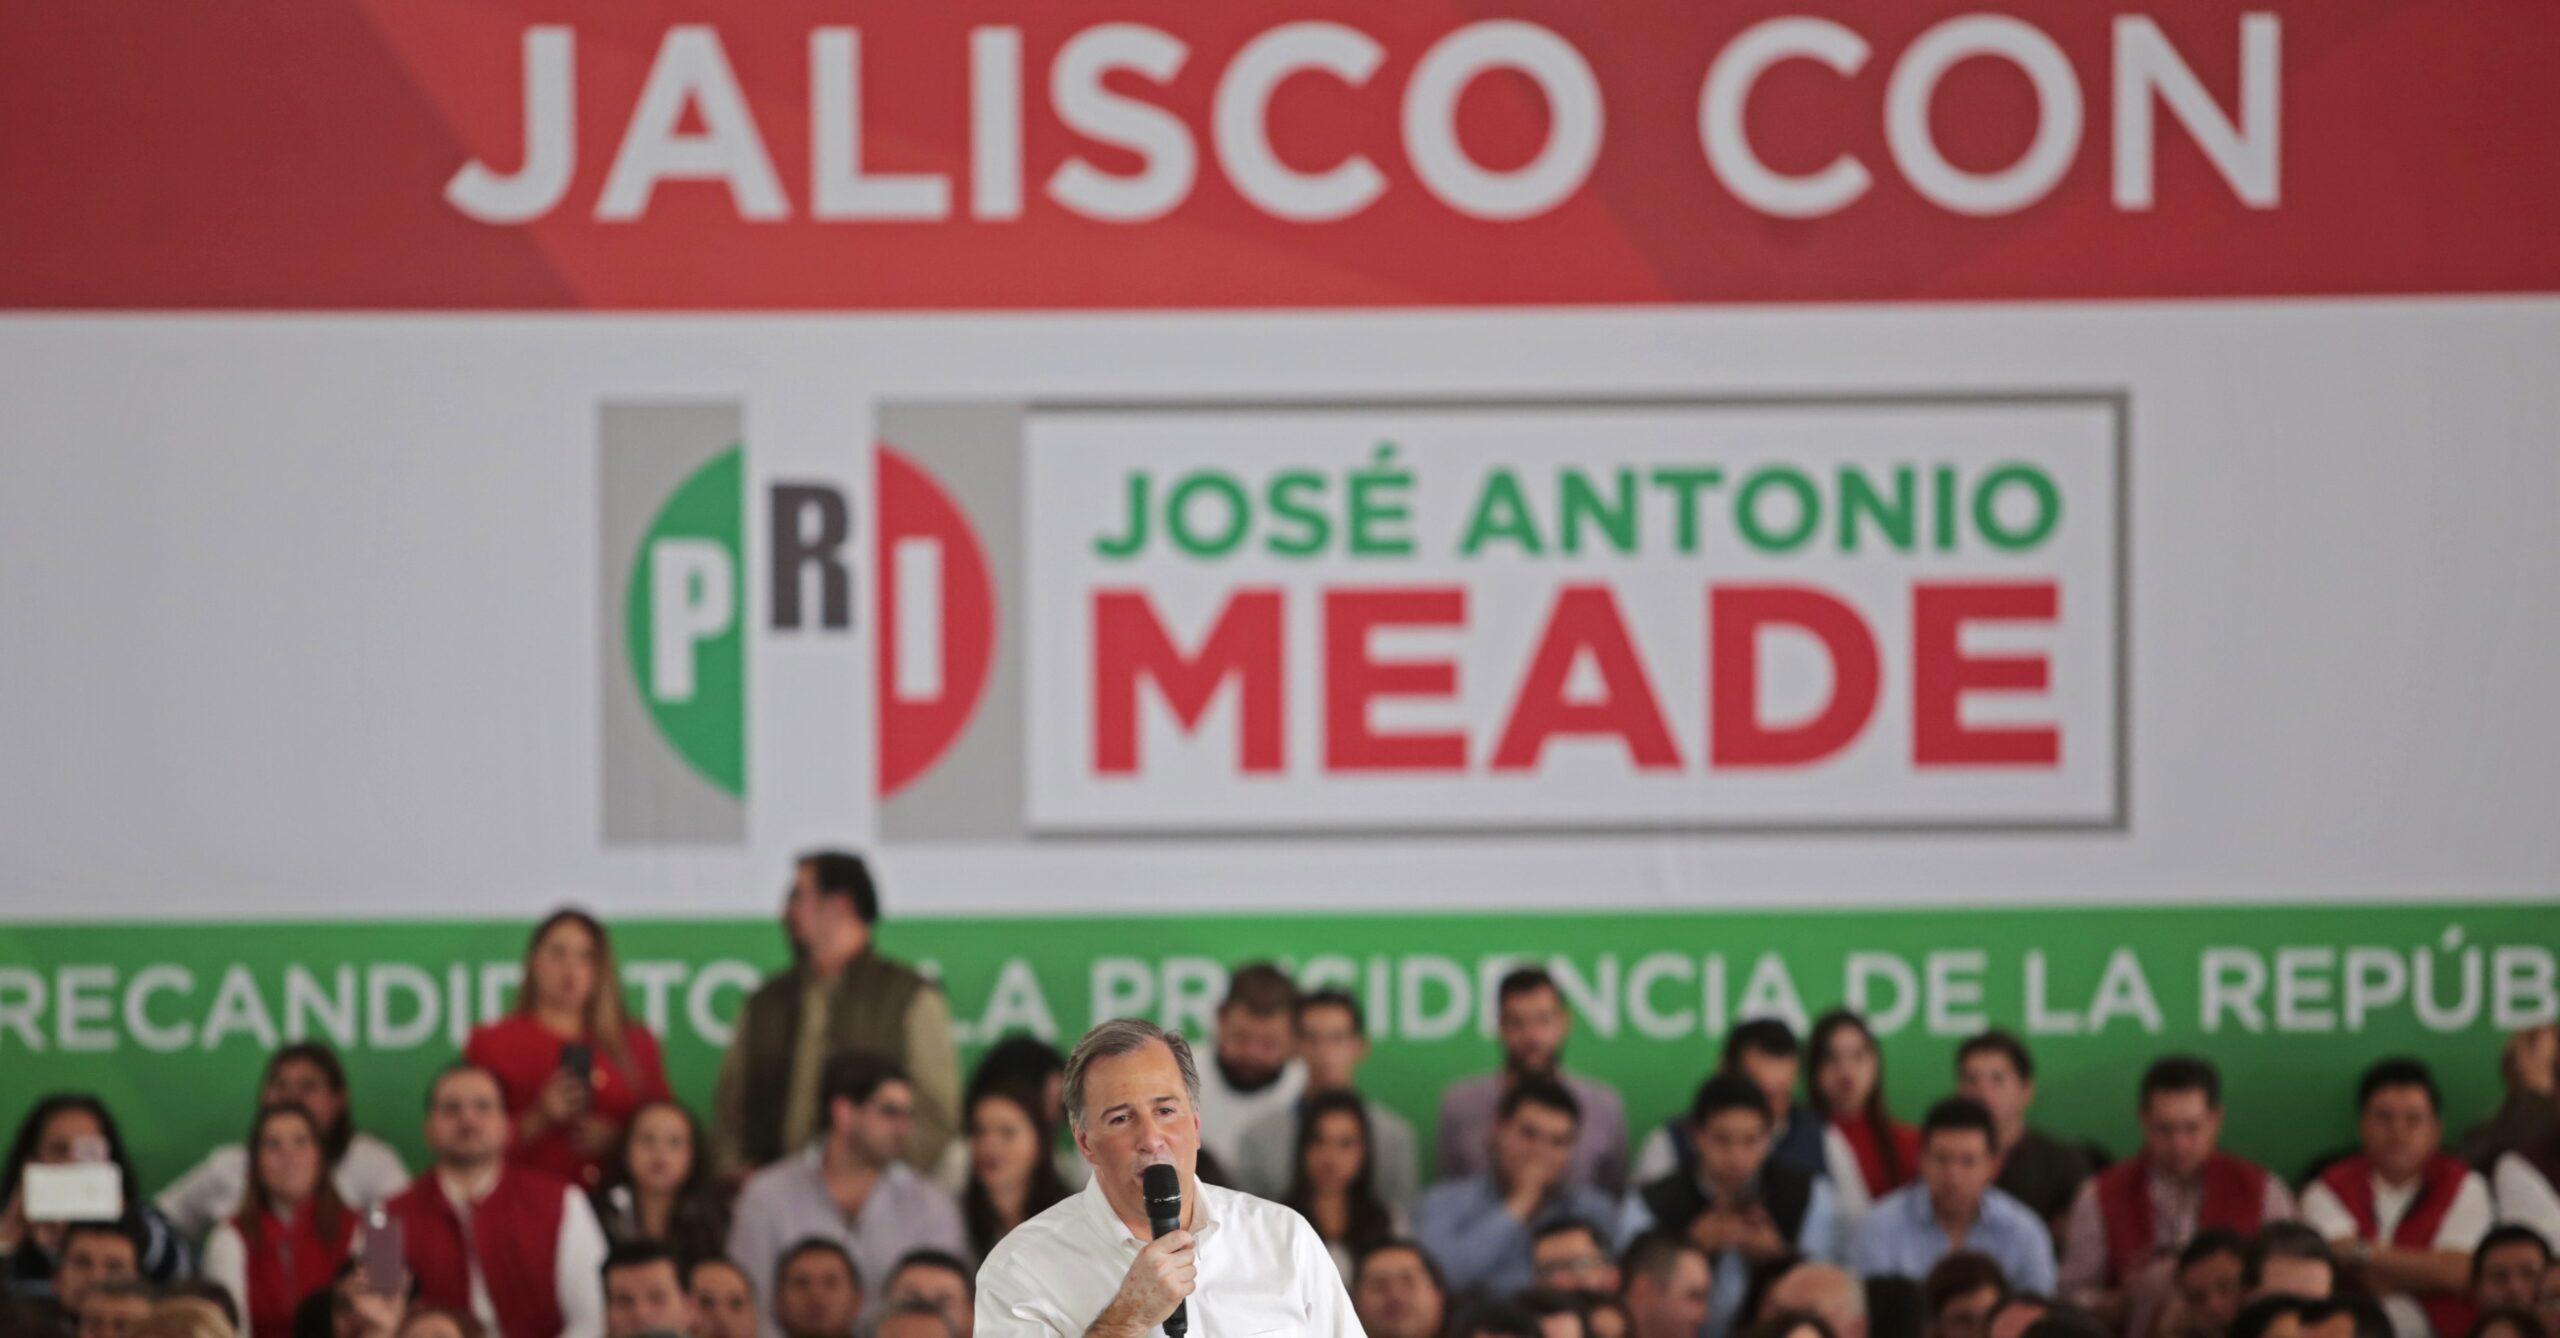 El panorama electoral del PRI y Meade en Jalisco, entre renuncias y disputas internas